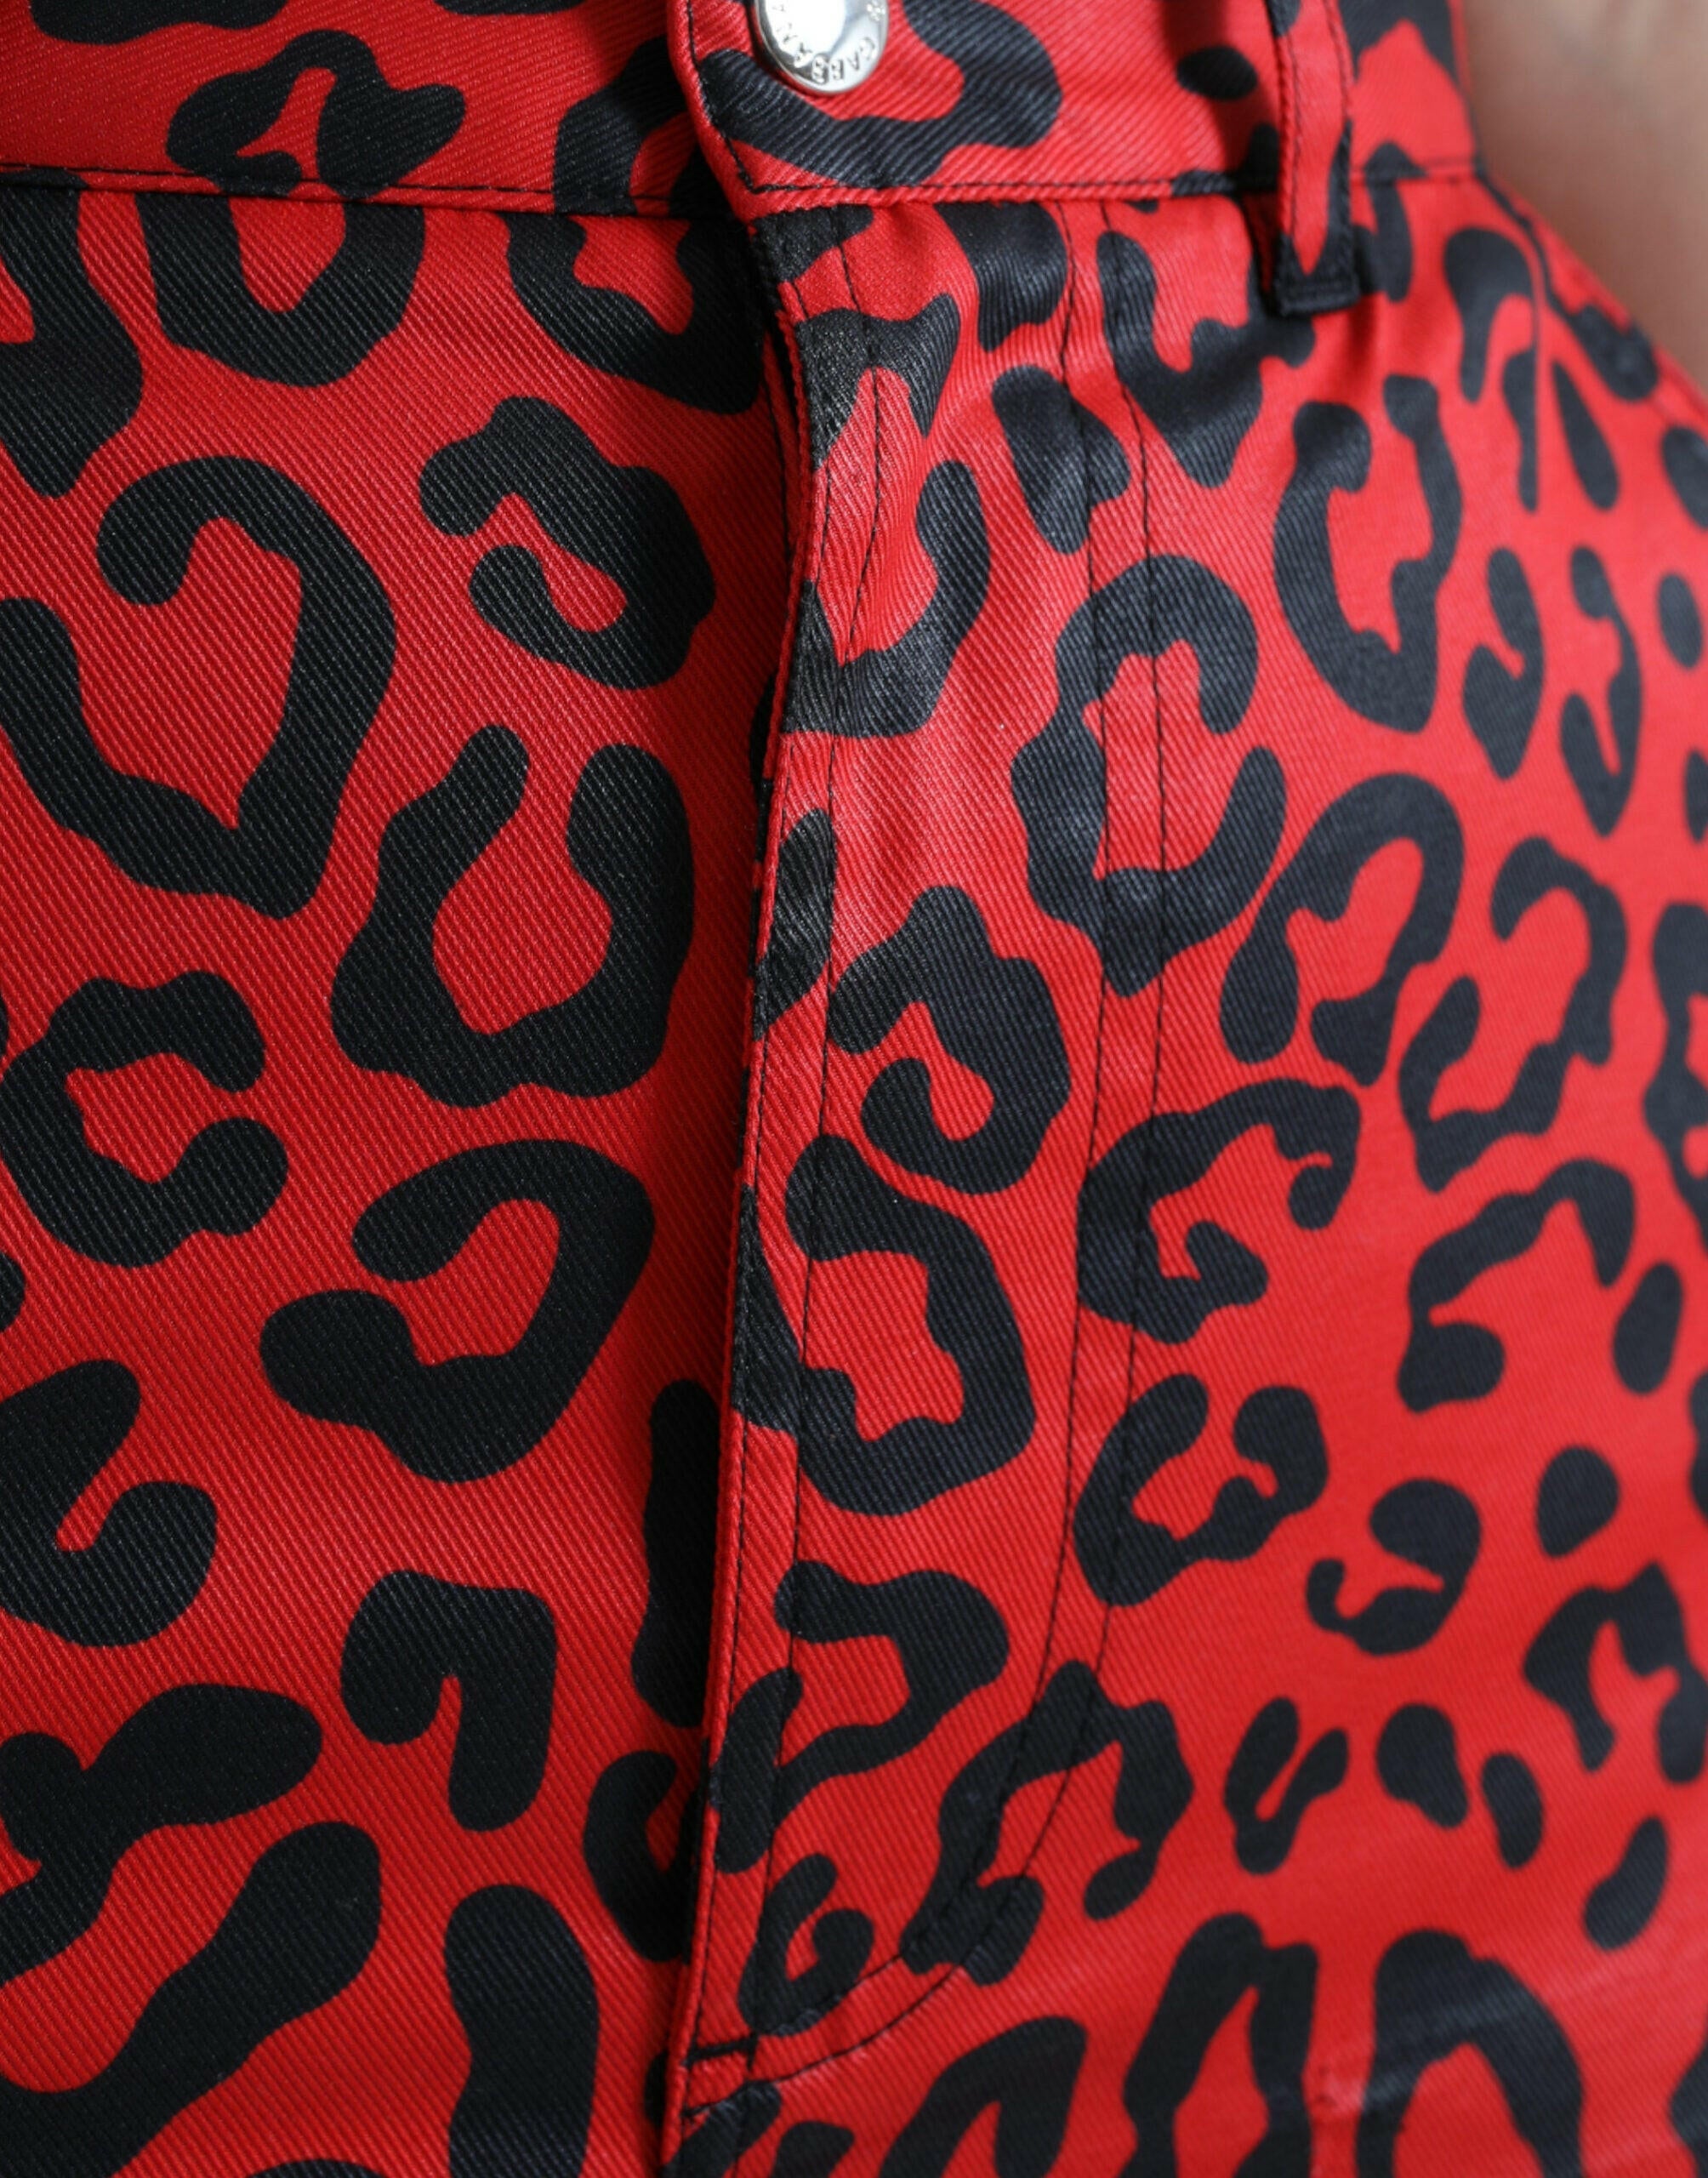 Dolce & Gabbana Red Leopard Print Cotton High Waist Mini Skirt.